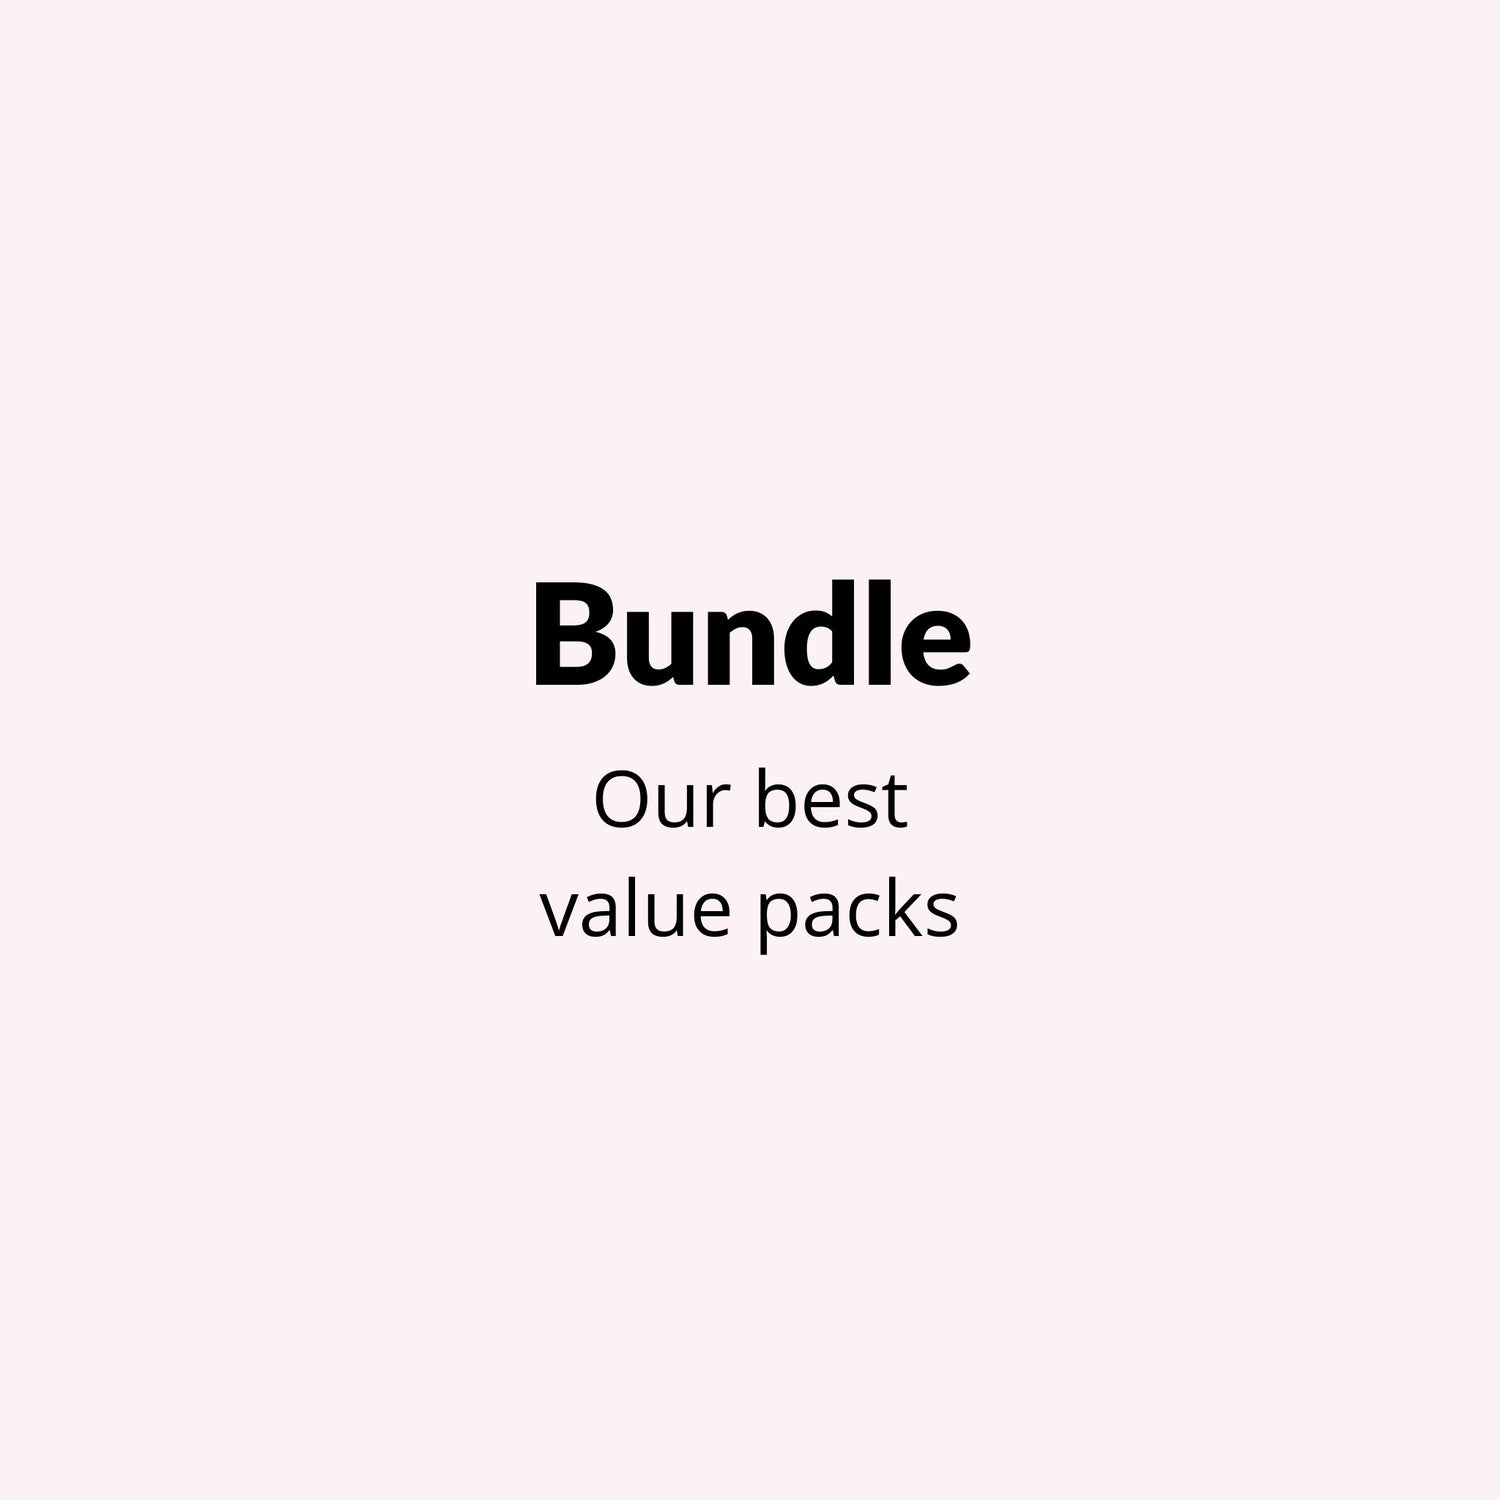 Value packs